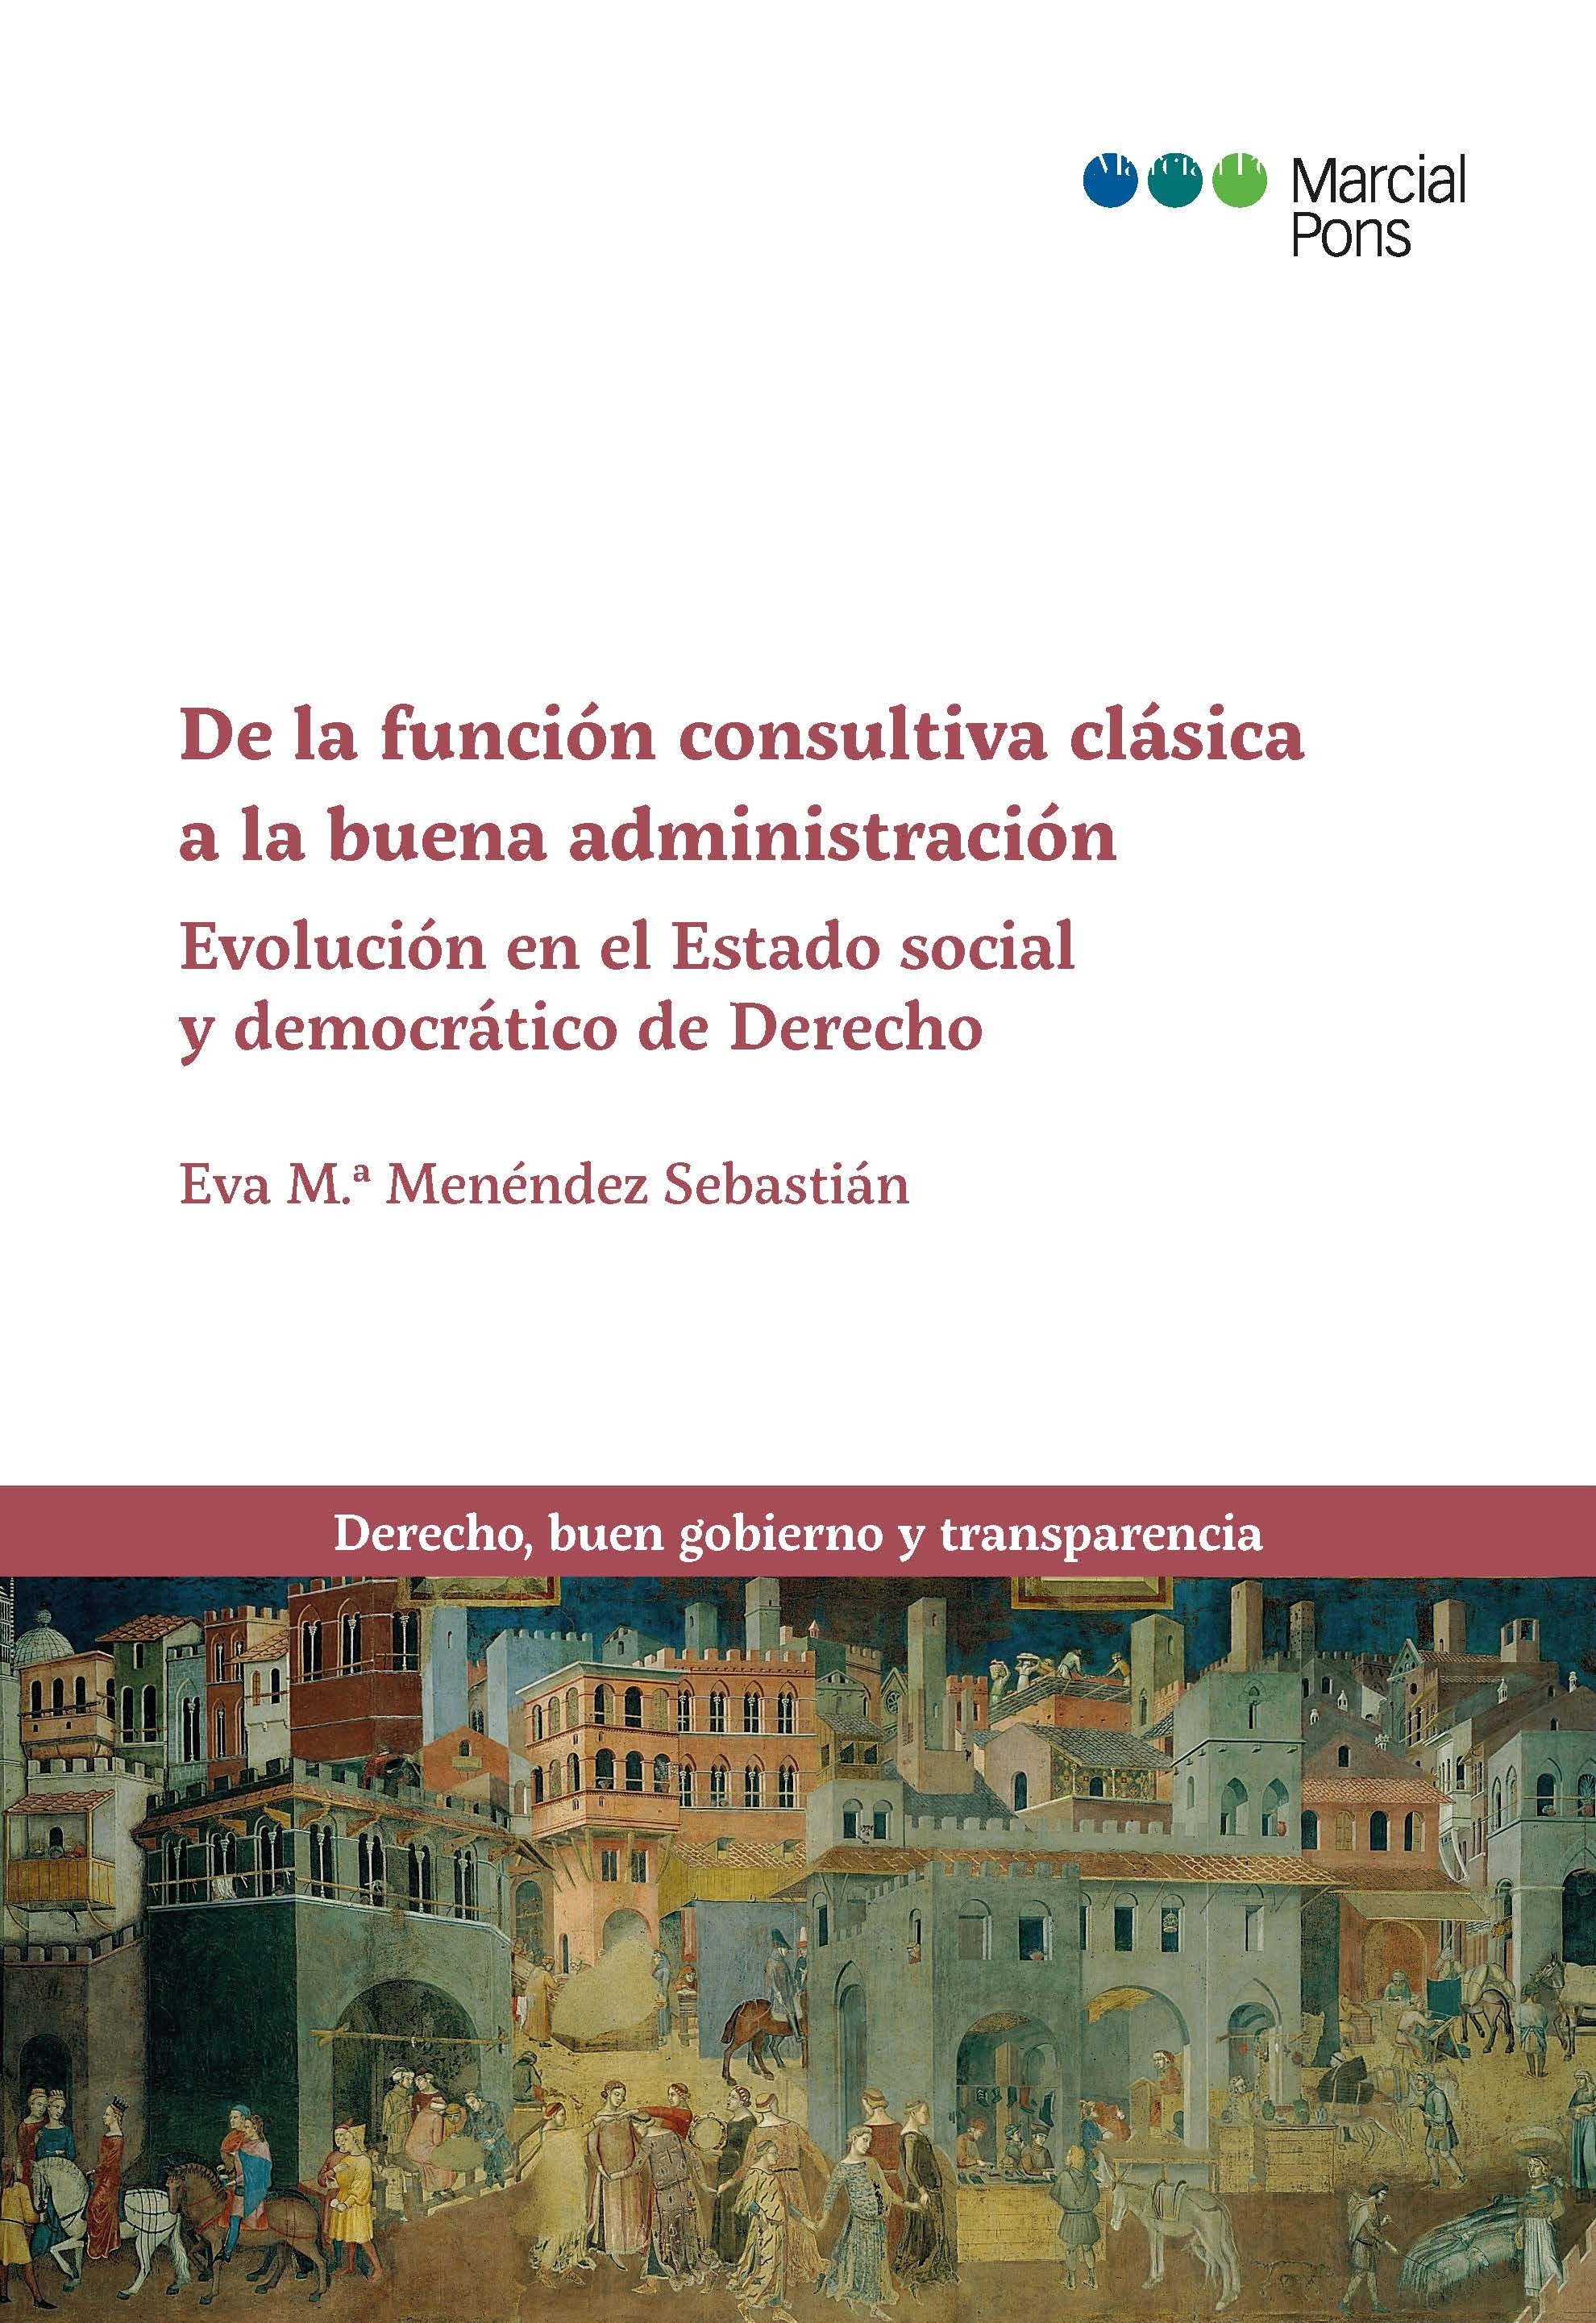 De la función consultiva clásica a la buena administración "Evolución en Estado social y democrático de Derecho"